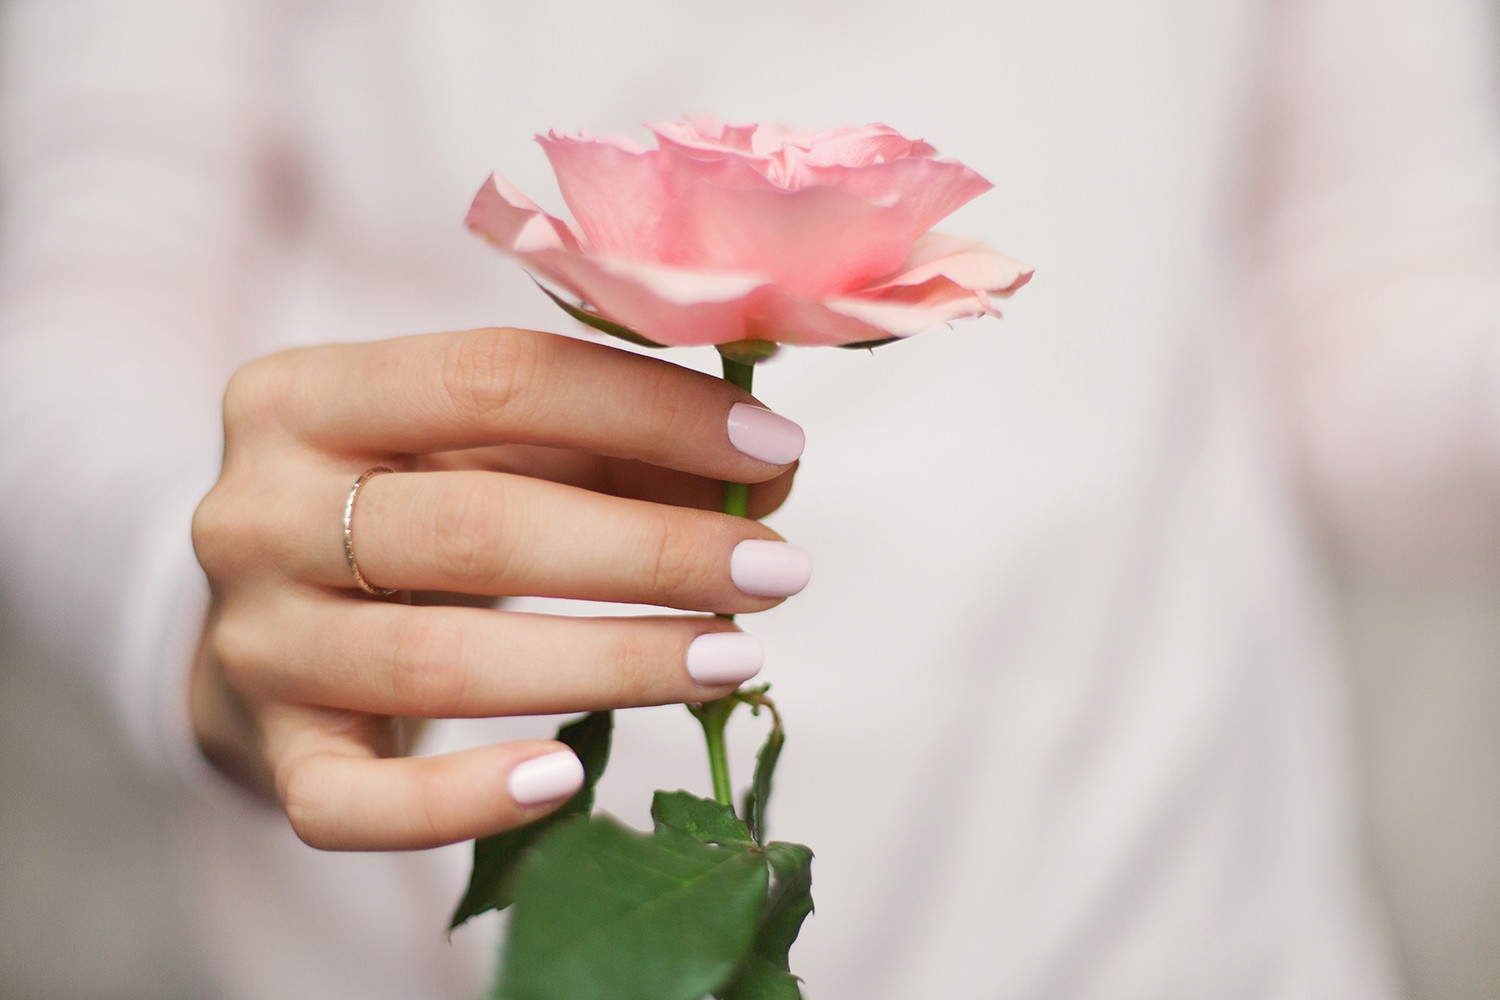 Holding a pink rose by M. Klasan